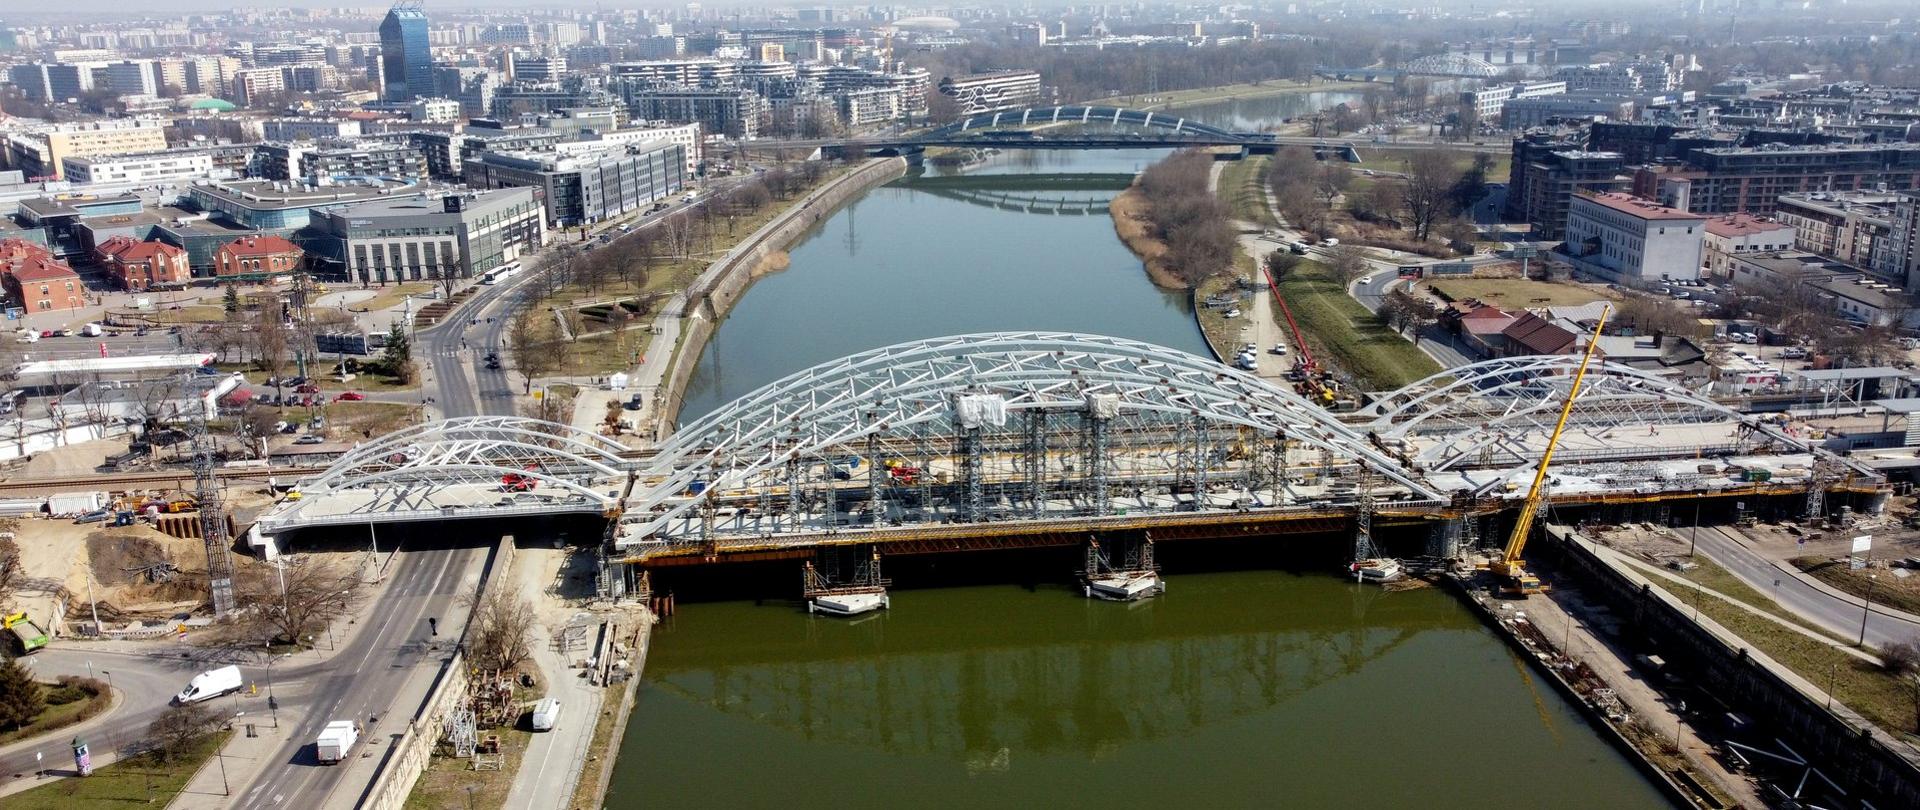 Nowy most kolejowy w Krakowie usprawni podróże pociągiem w regionie